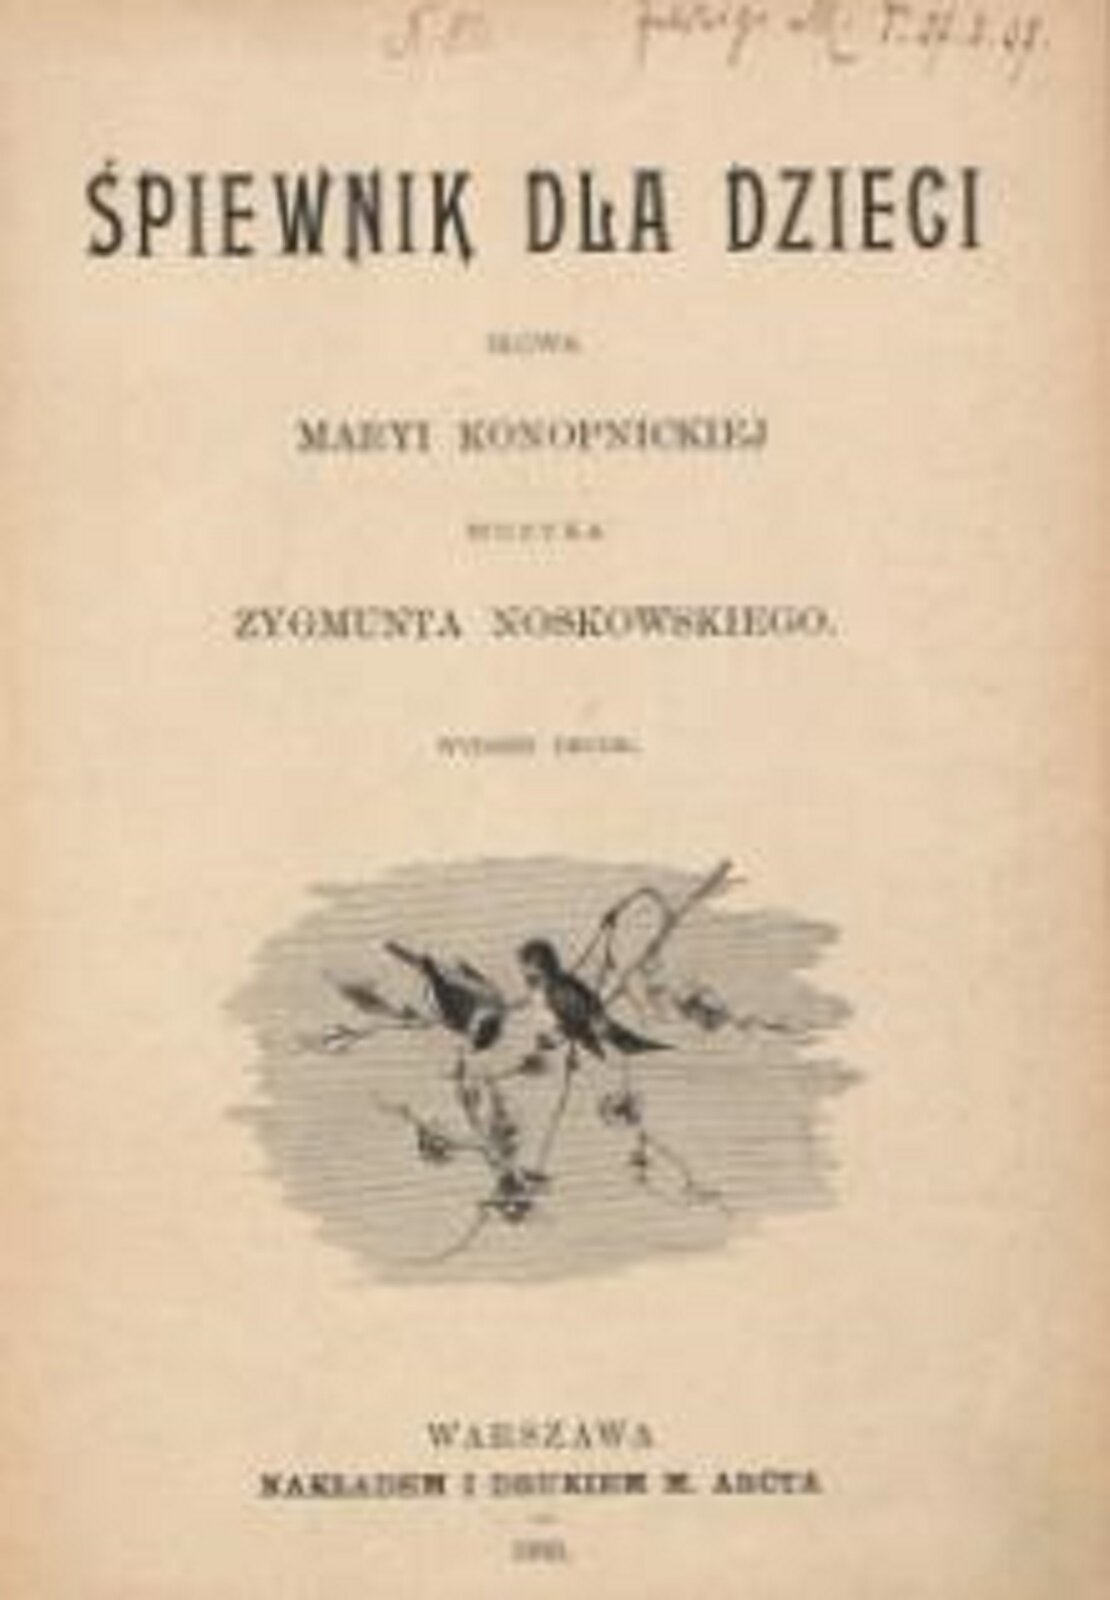 Fotografia przedstawia okładkę „Śpiewnika dla dzieci” Marii Konopnickiej i Zygmunta Noskowskiego. Na okładce znajduje się rysunek przedstawiający gałązkę i dwa ptaszki.